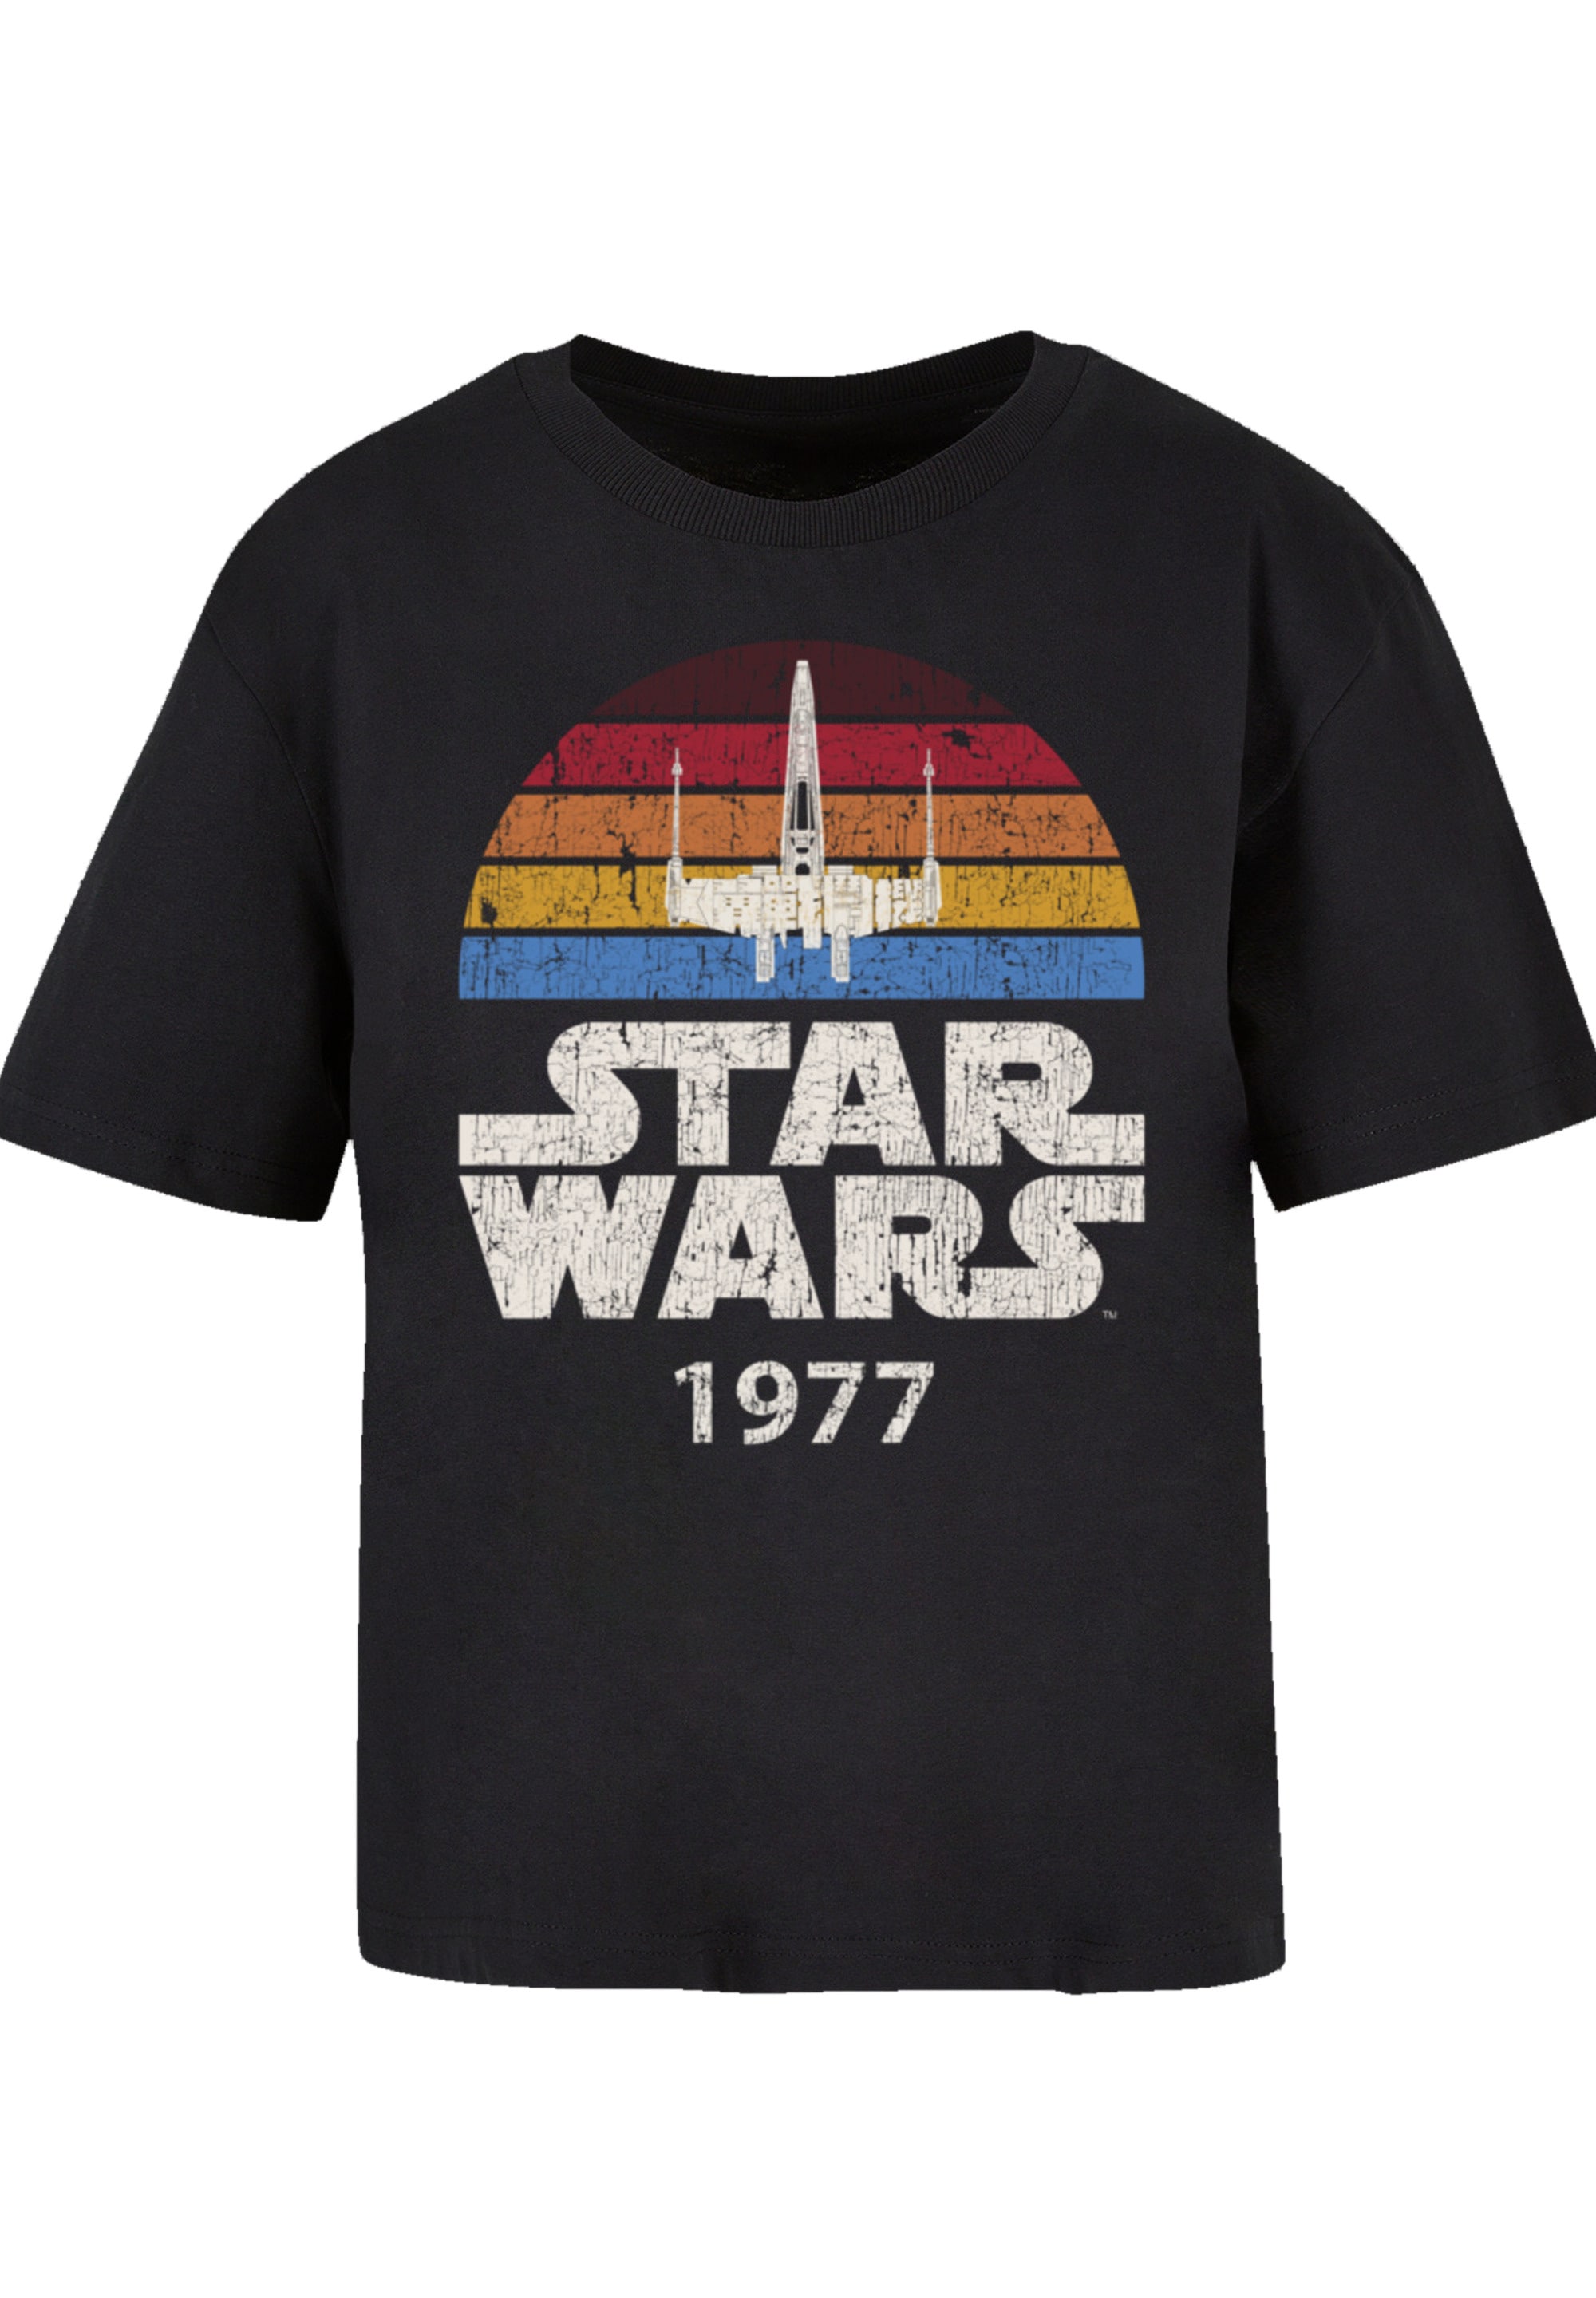 Qualität Wars X-Wing T-Shirt BAUR kaufen Trip »Star Premium F4NT4STIC online | 1977«,